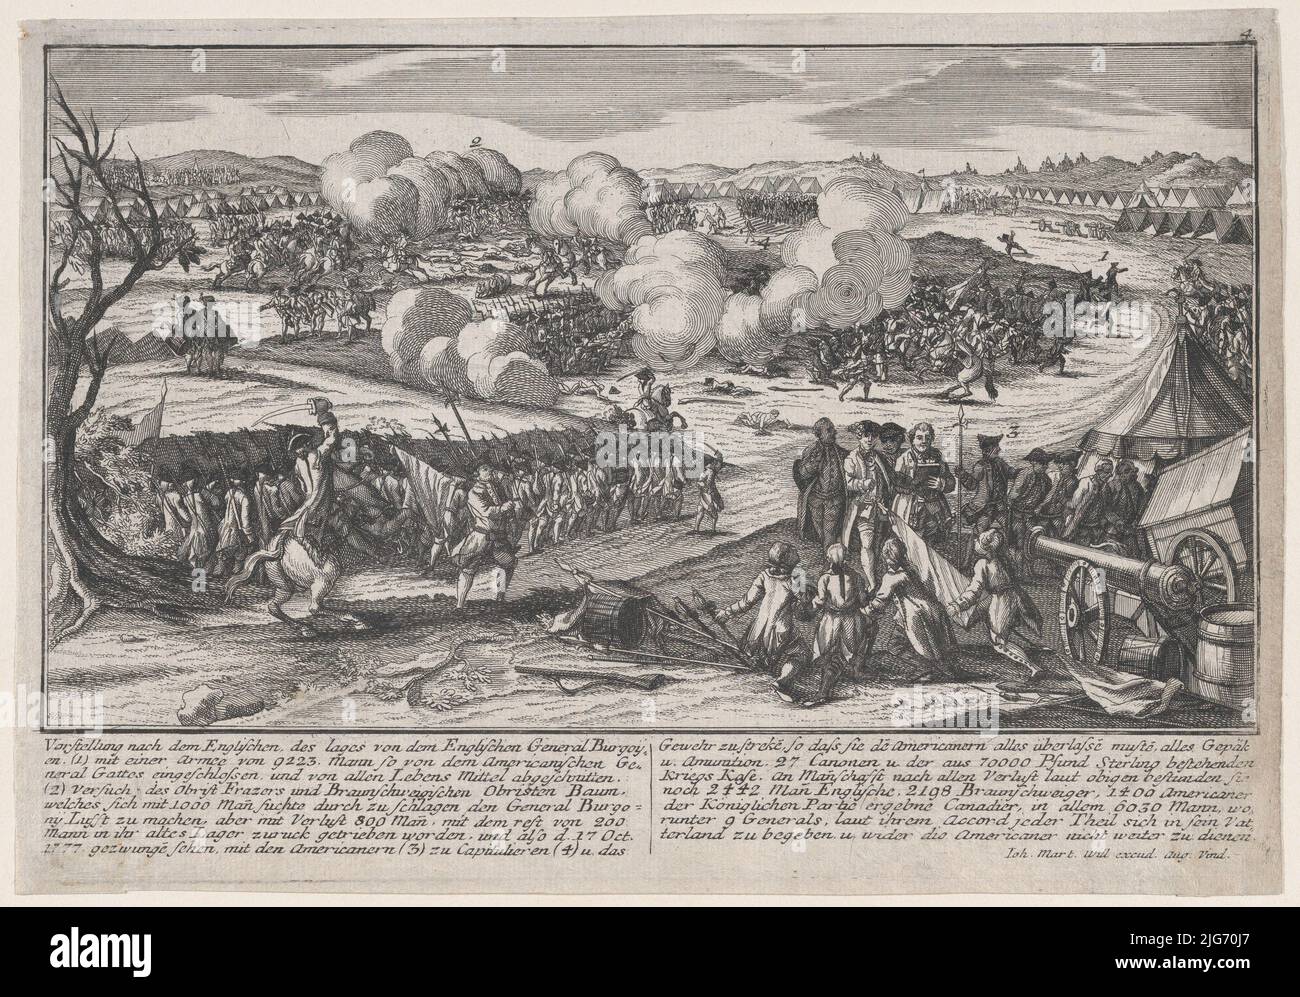 Battle of Saratoga (September 19, 1777). Stock Photo